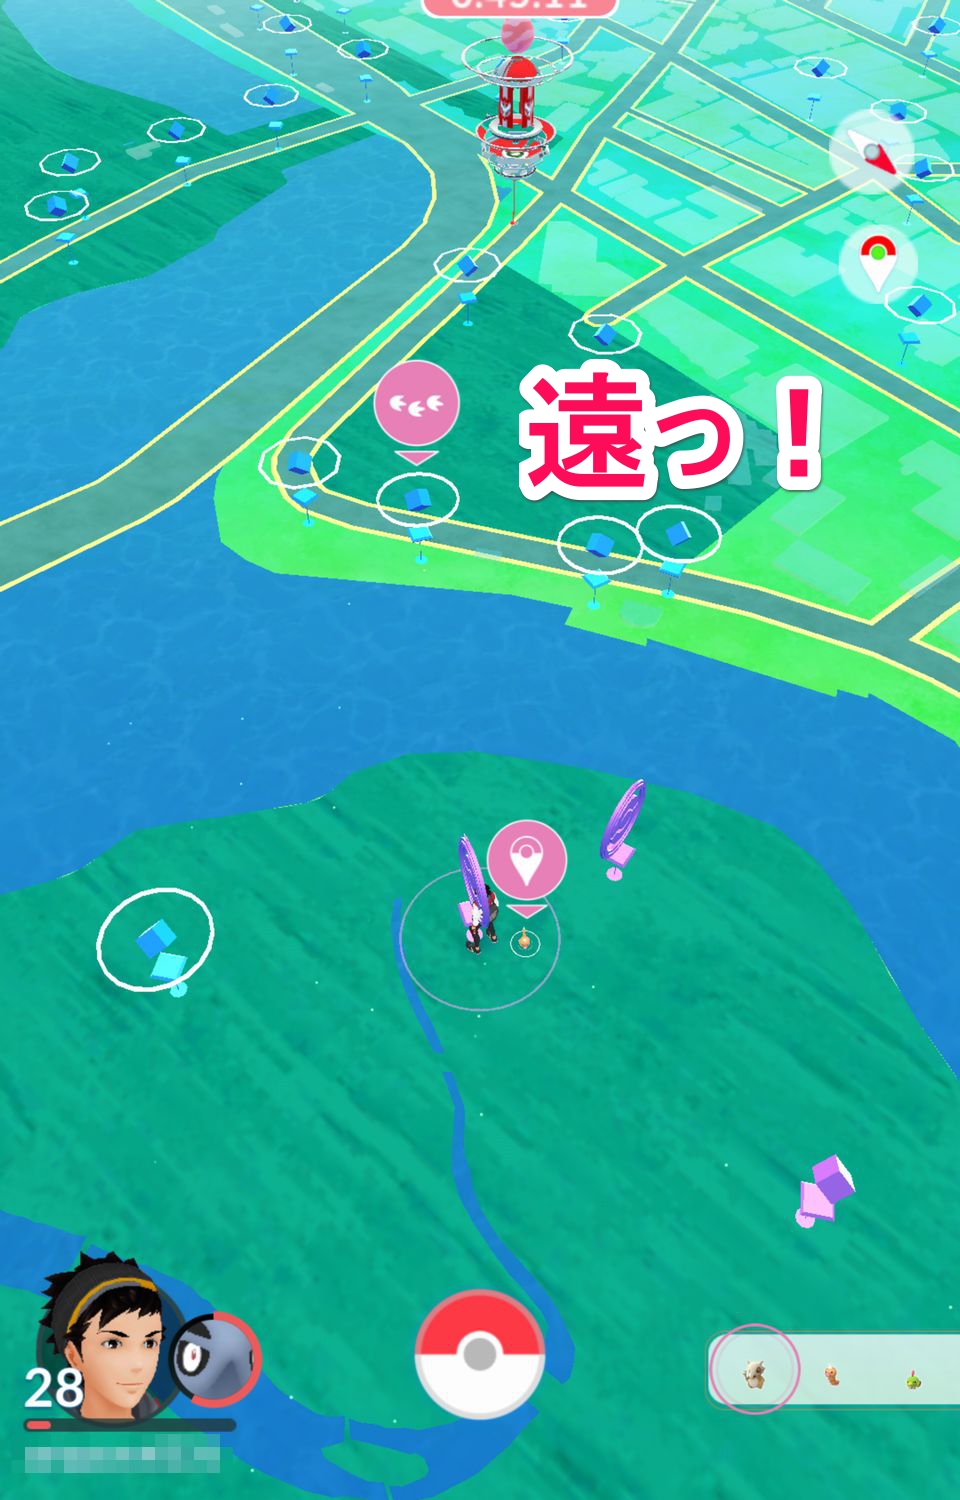 10 5版 ポケモンgo 攻略 ライコウ対策にも使える 北の丸公園にカラカラが大量発生中 Appliv Games